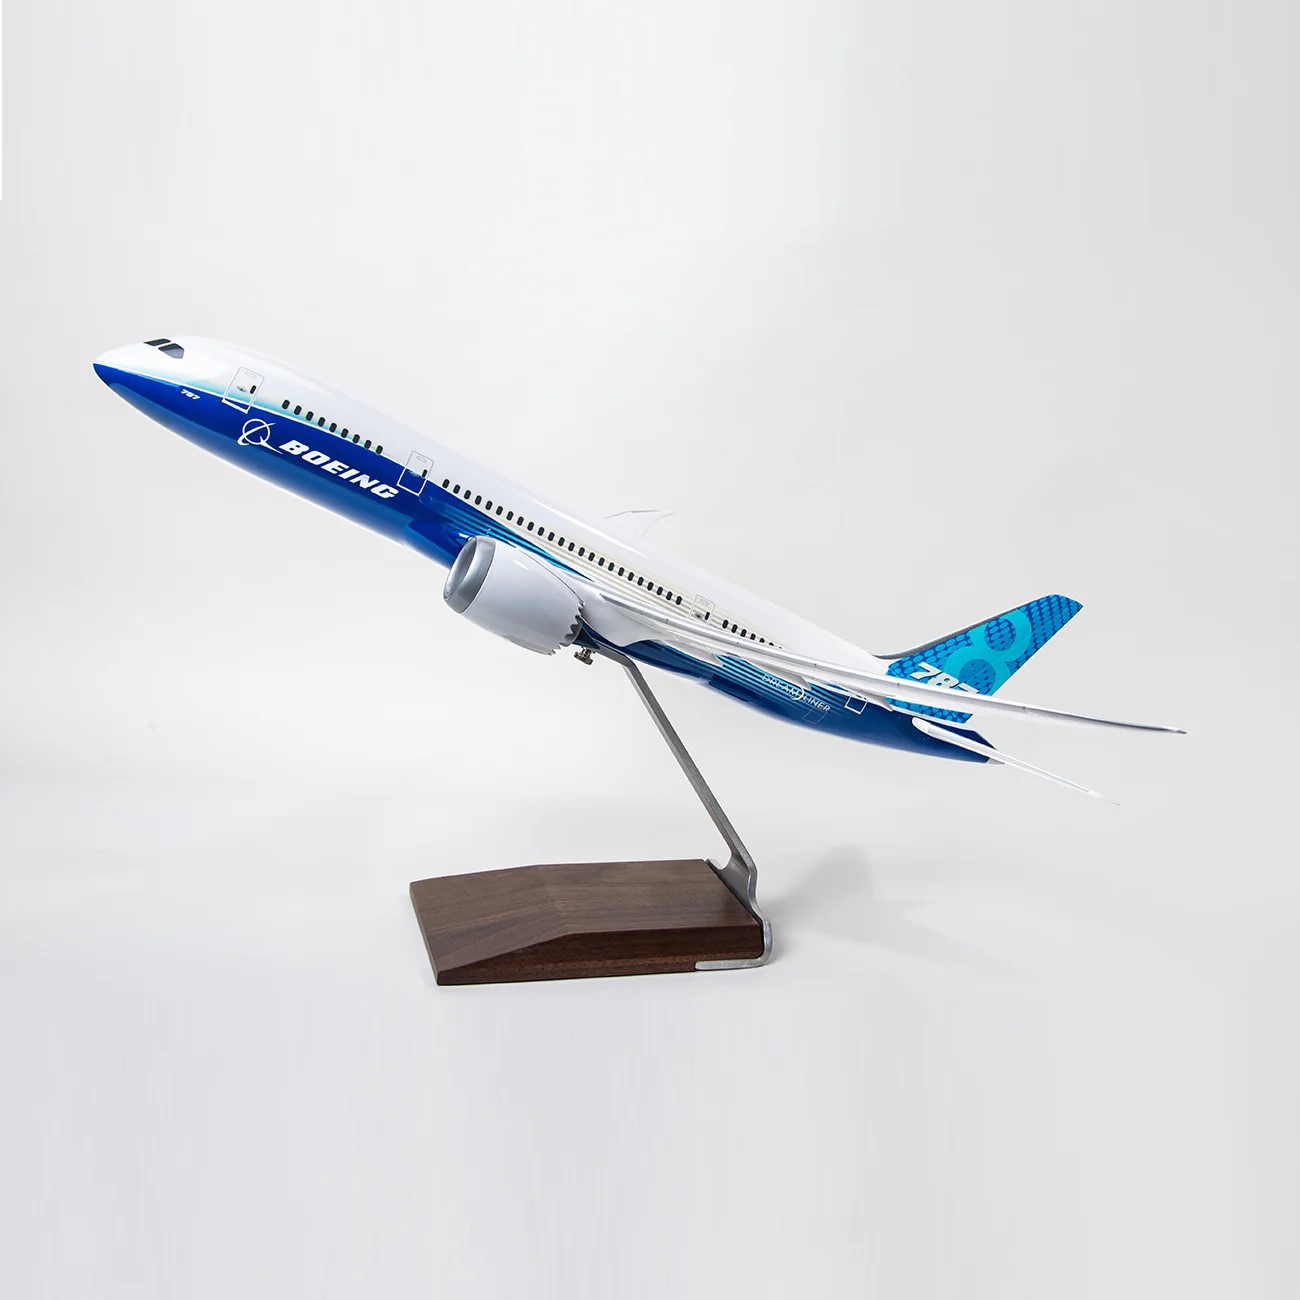 ボーイング 787-8 Dreamliner Executive Model ダイキャスト